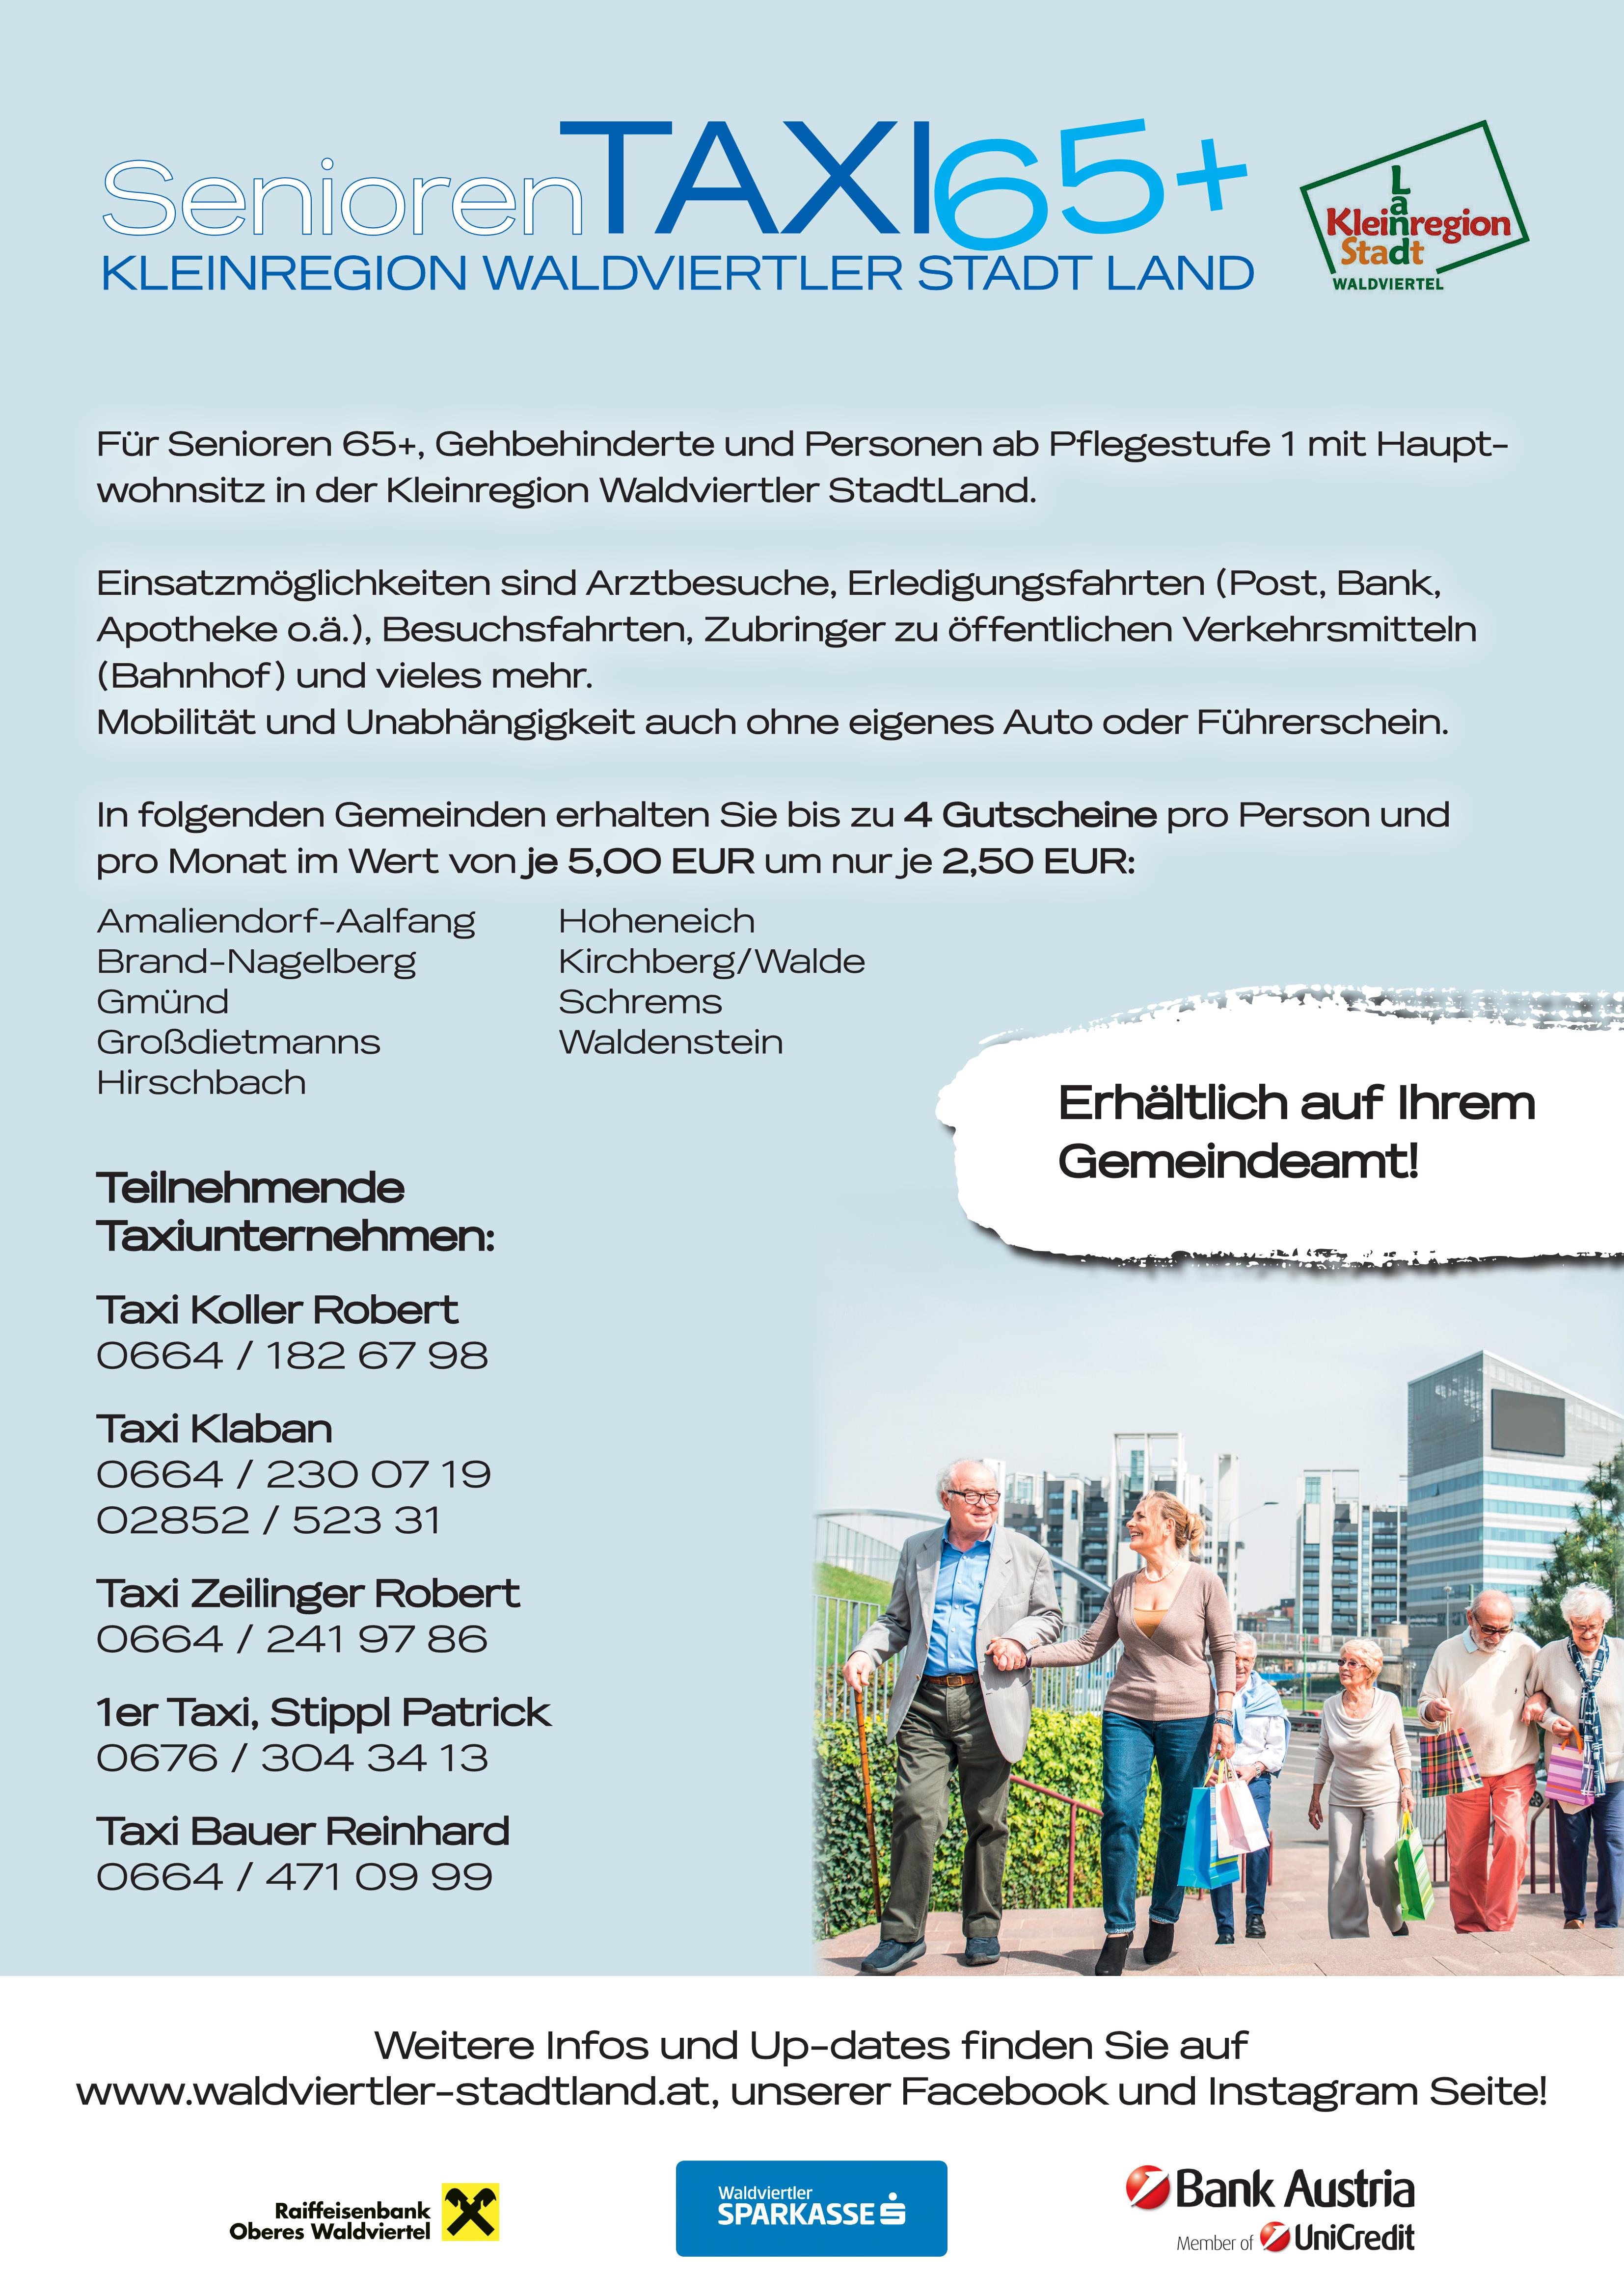 Infoplakat von Kleinregion Waldviertler StadtLand zum Seniorentaxi.